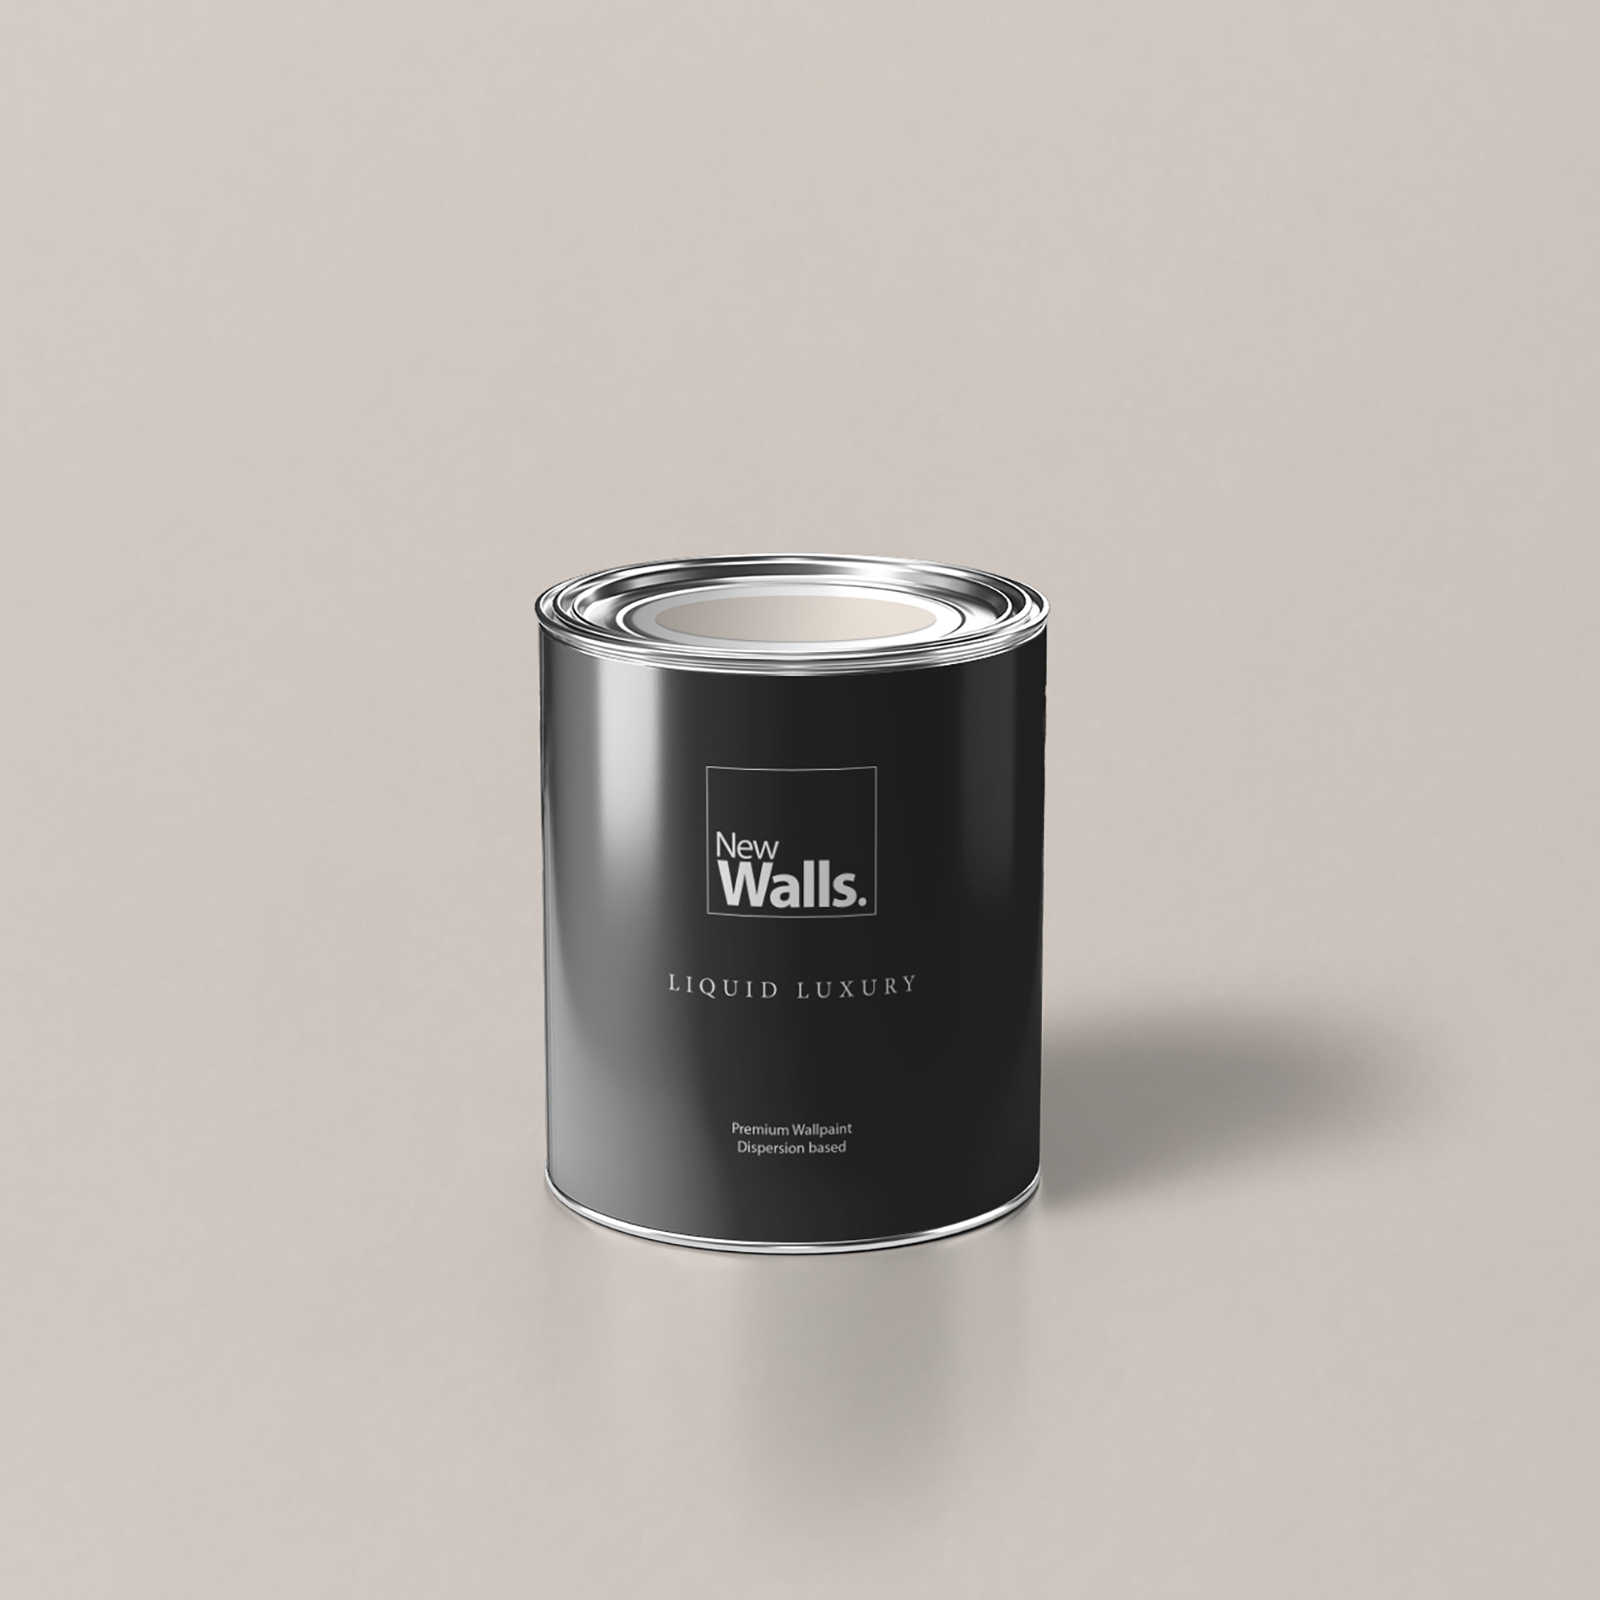         Premium Wall Paint Plain Greige »Boho Beige« NW722 – 1 litre
    